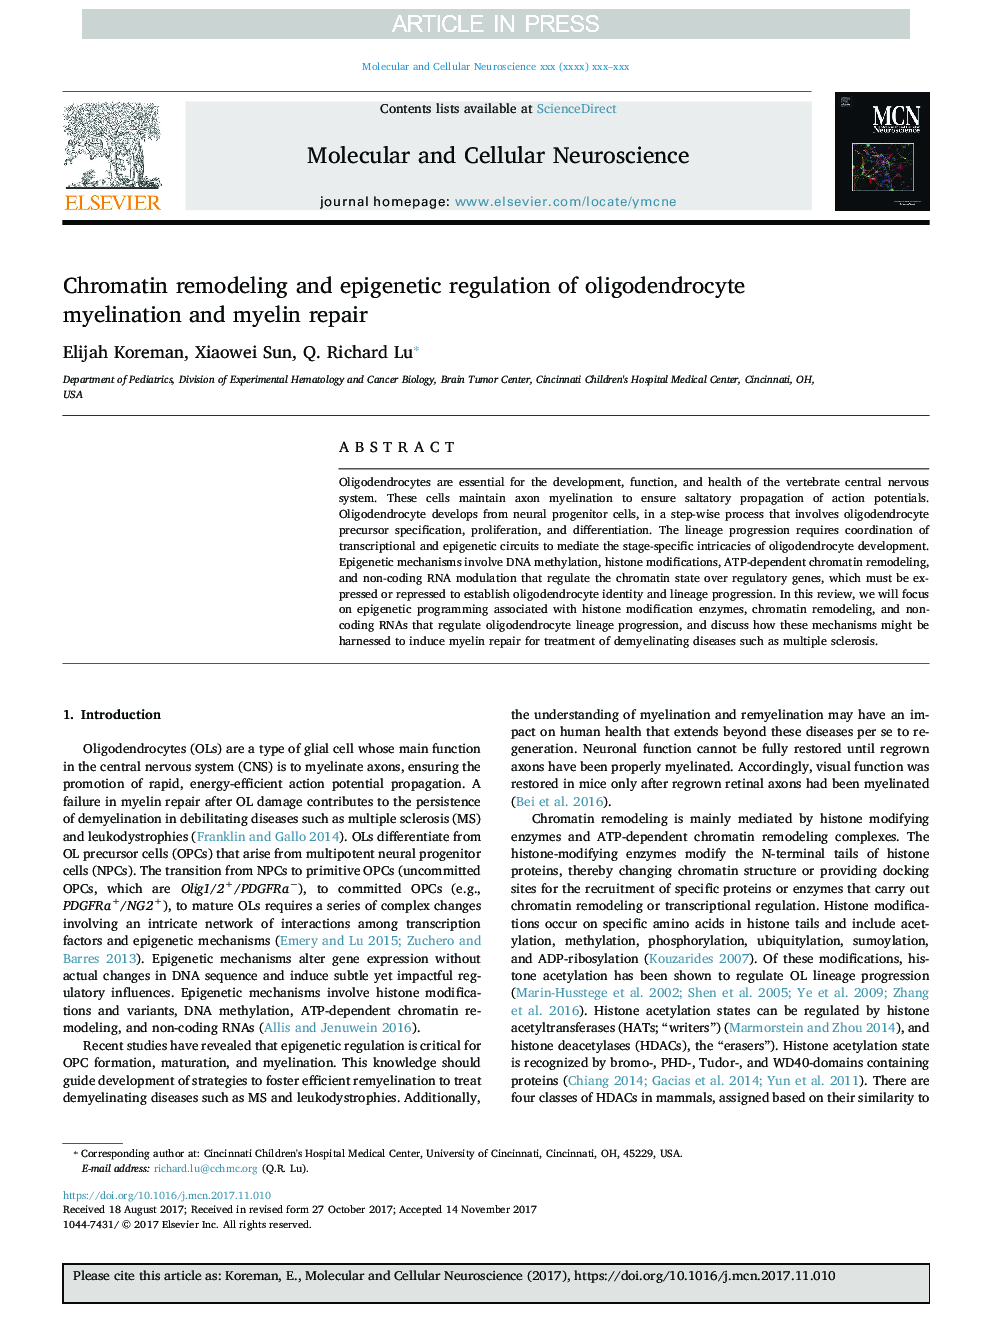 Chromatin remodeling and epigenetic regulation of oligodendrocyte myelination and myelin repair